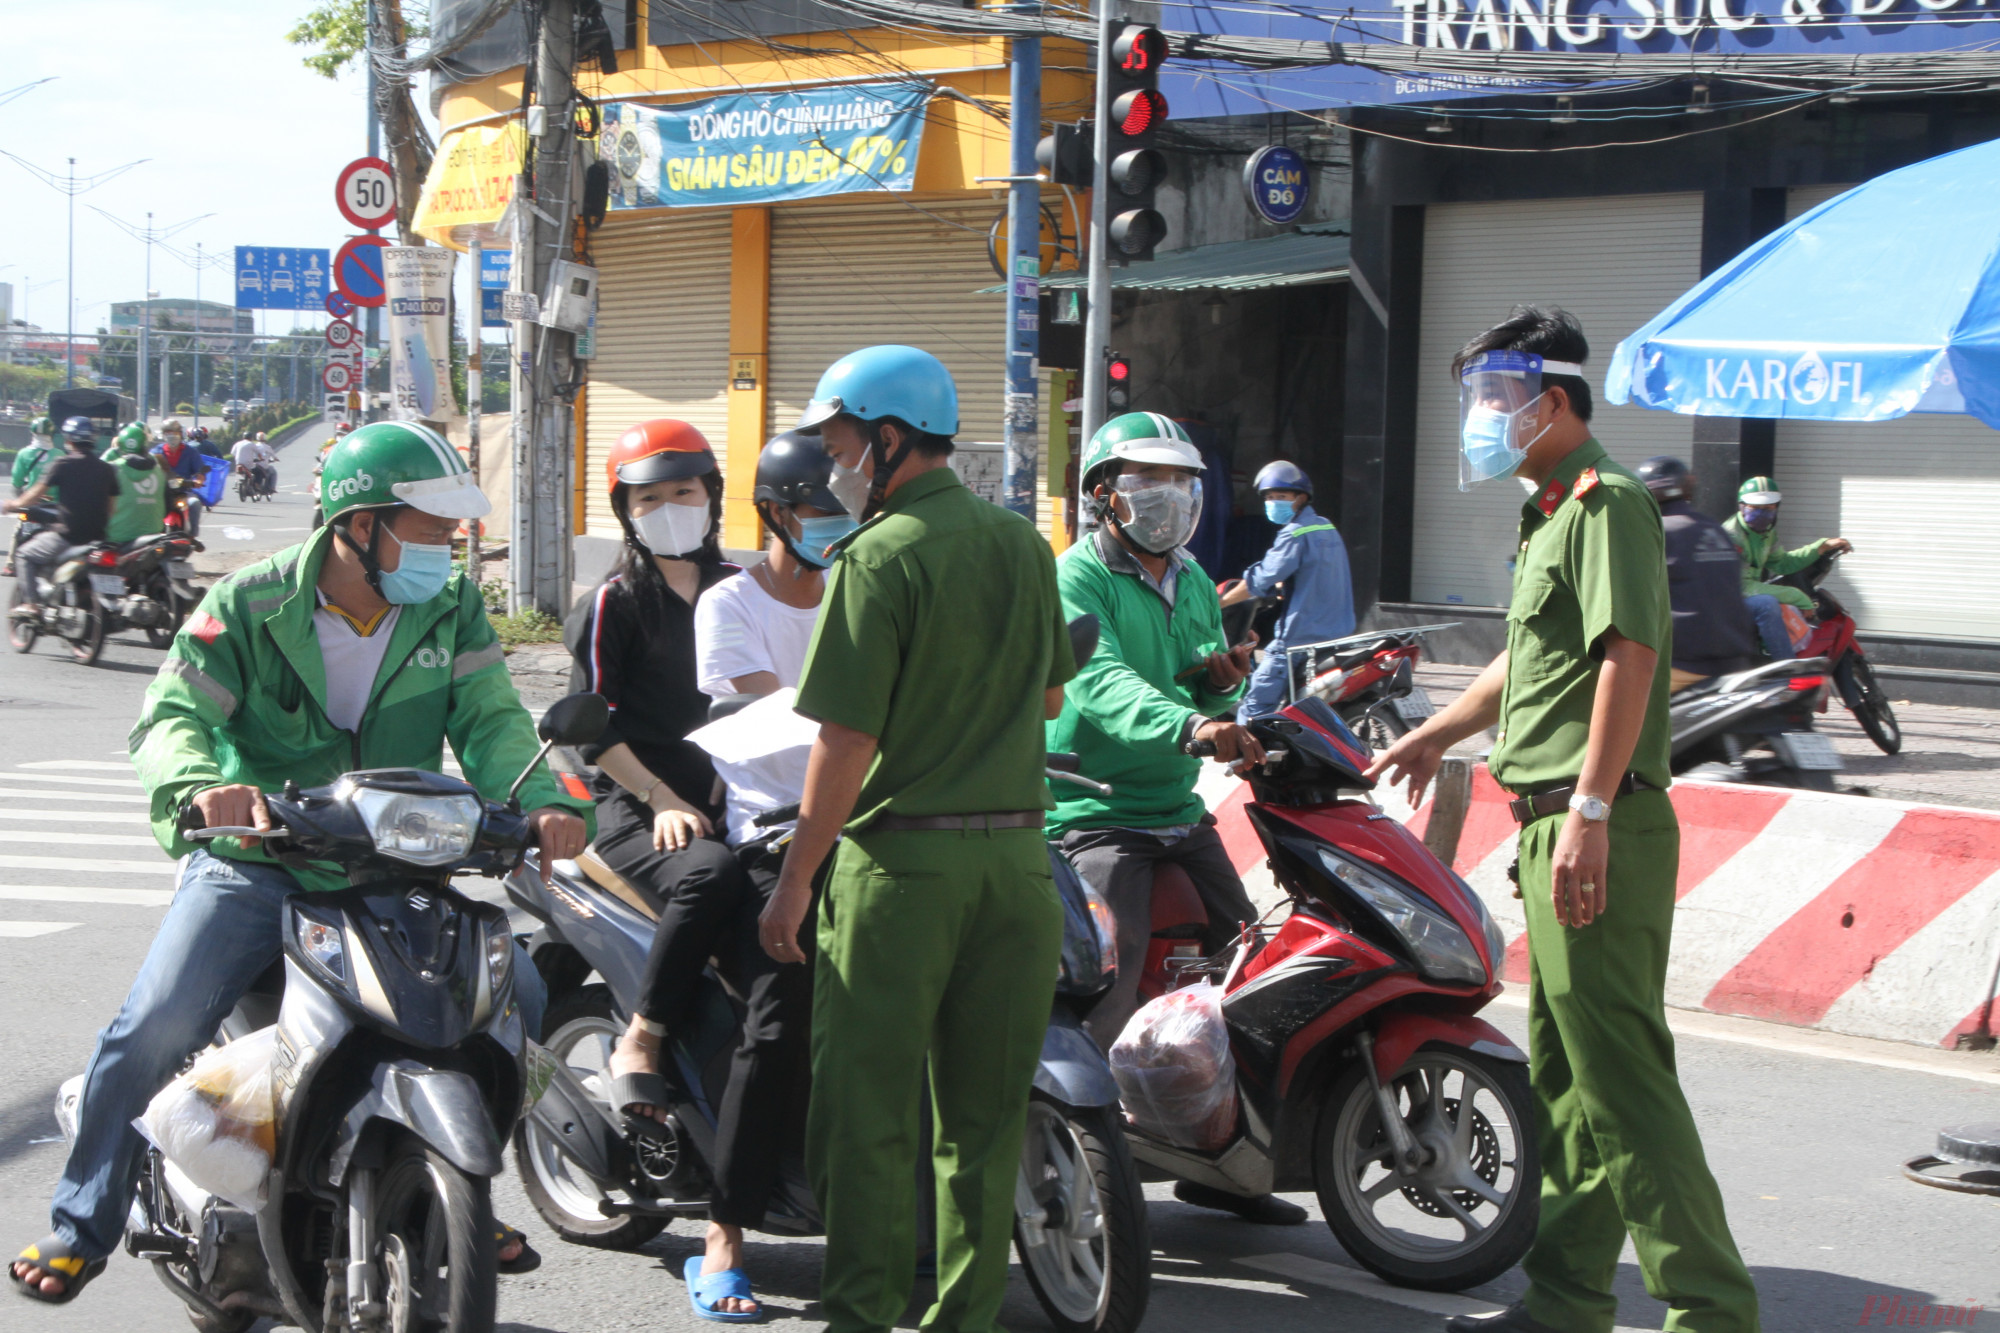 Nhiều shiper ở quận Tân Phú, Tân Bình, Gò Vấp đến giao hàng ở địa bàn Phường Tân Thới Nhất quận 12, bị buộc phải quay đầu xe, do quy định chỉ giao hàng trong nội quận huyện.